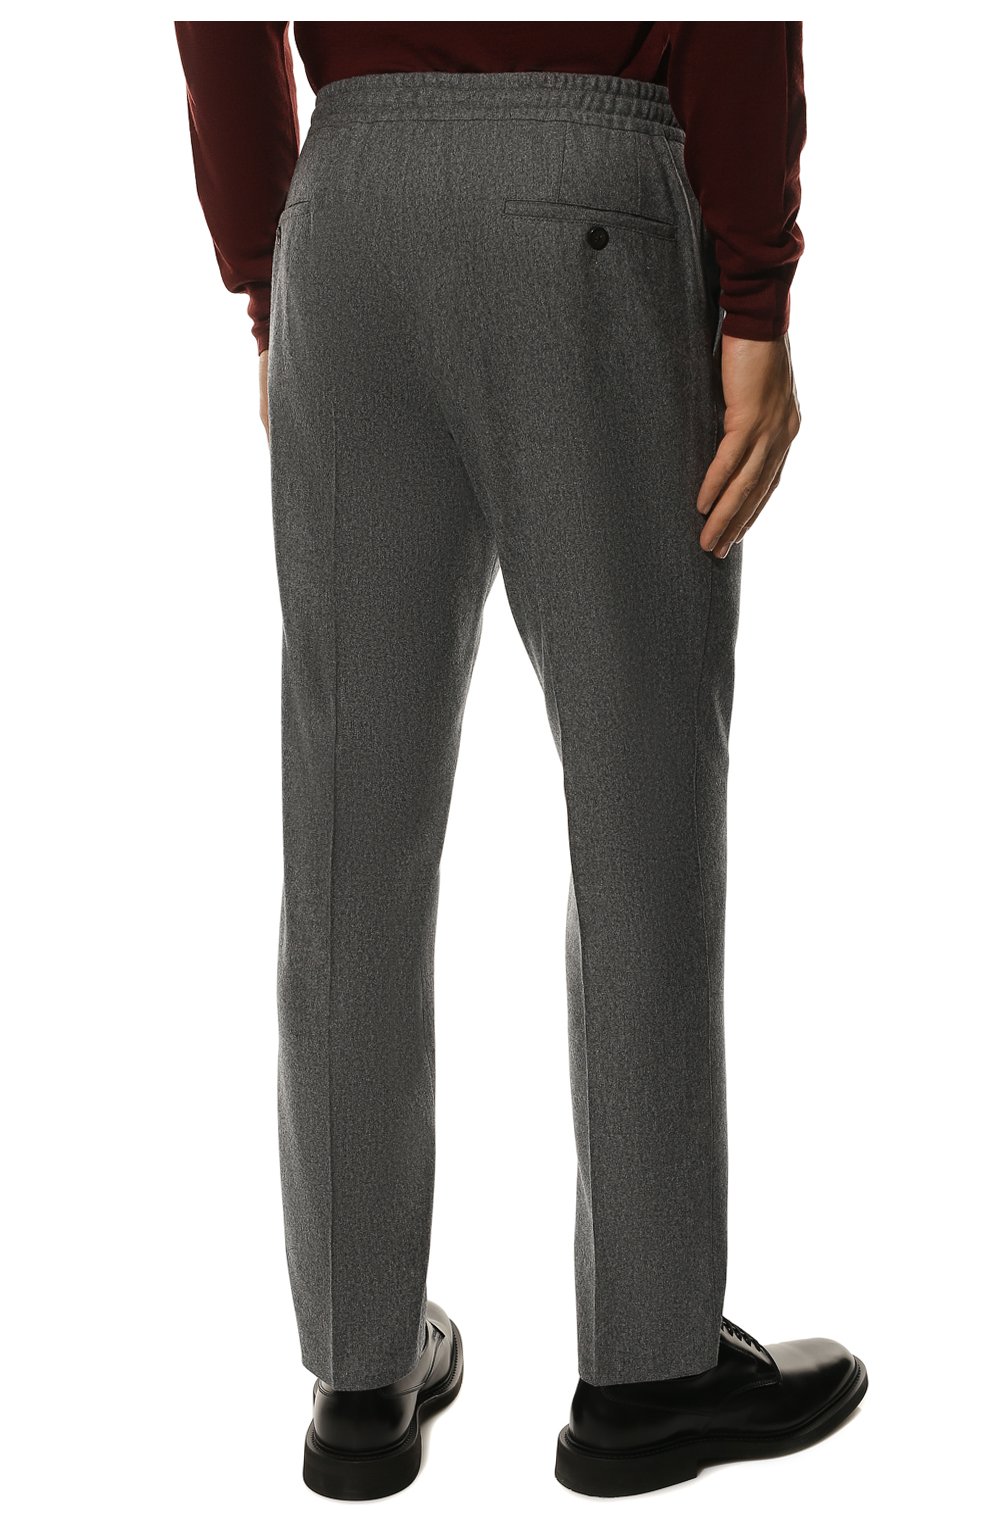 Мужские шерстяные брюки CORNELIANI серого цвета, арт. 904L04-2818117/00 | Фото 4 (Материал внешний: Шерсть; Длина (брюки, джинсы): Стандартные; Случай: Повседневный; Стили: Кэжуэл)